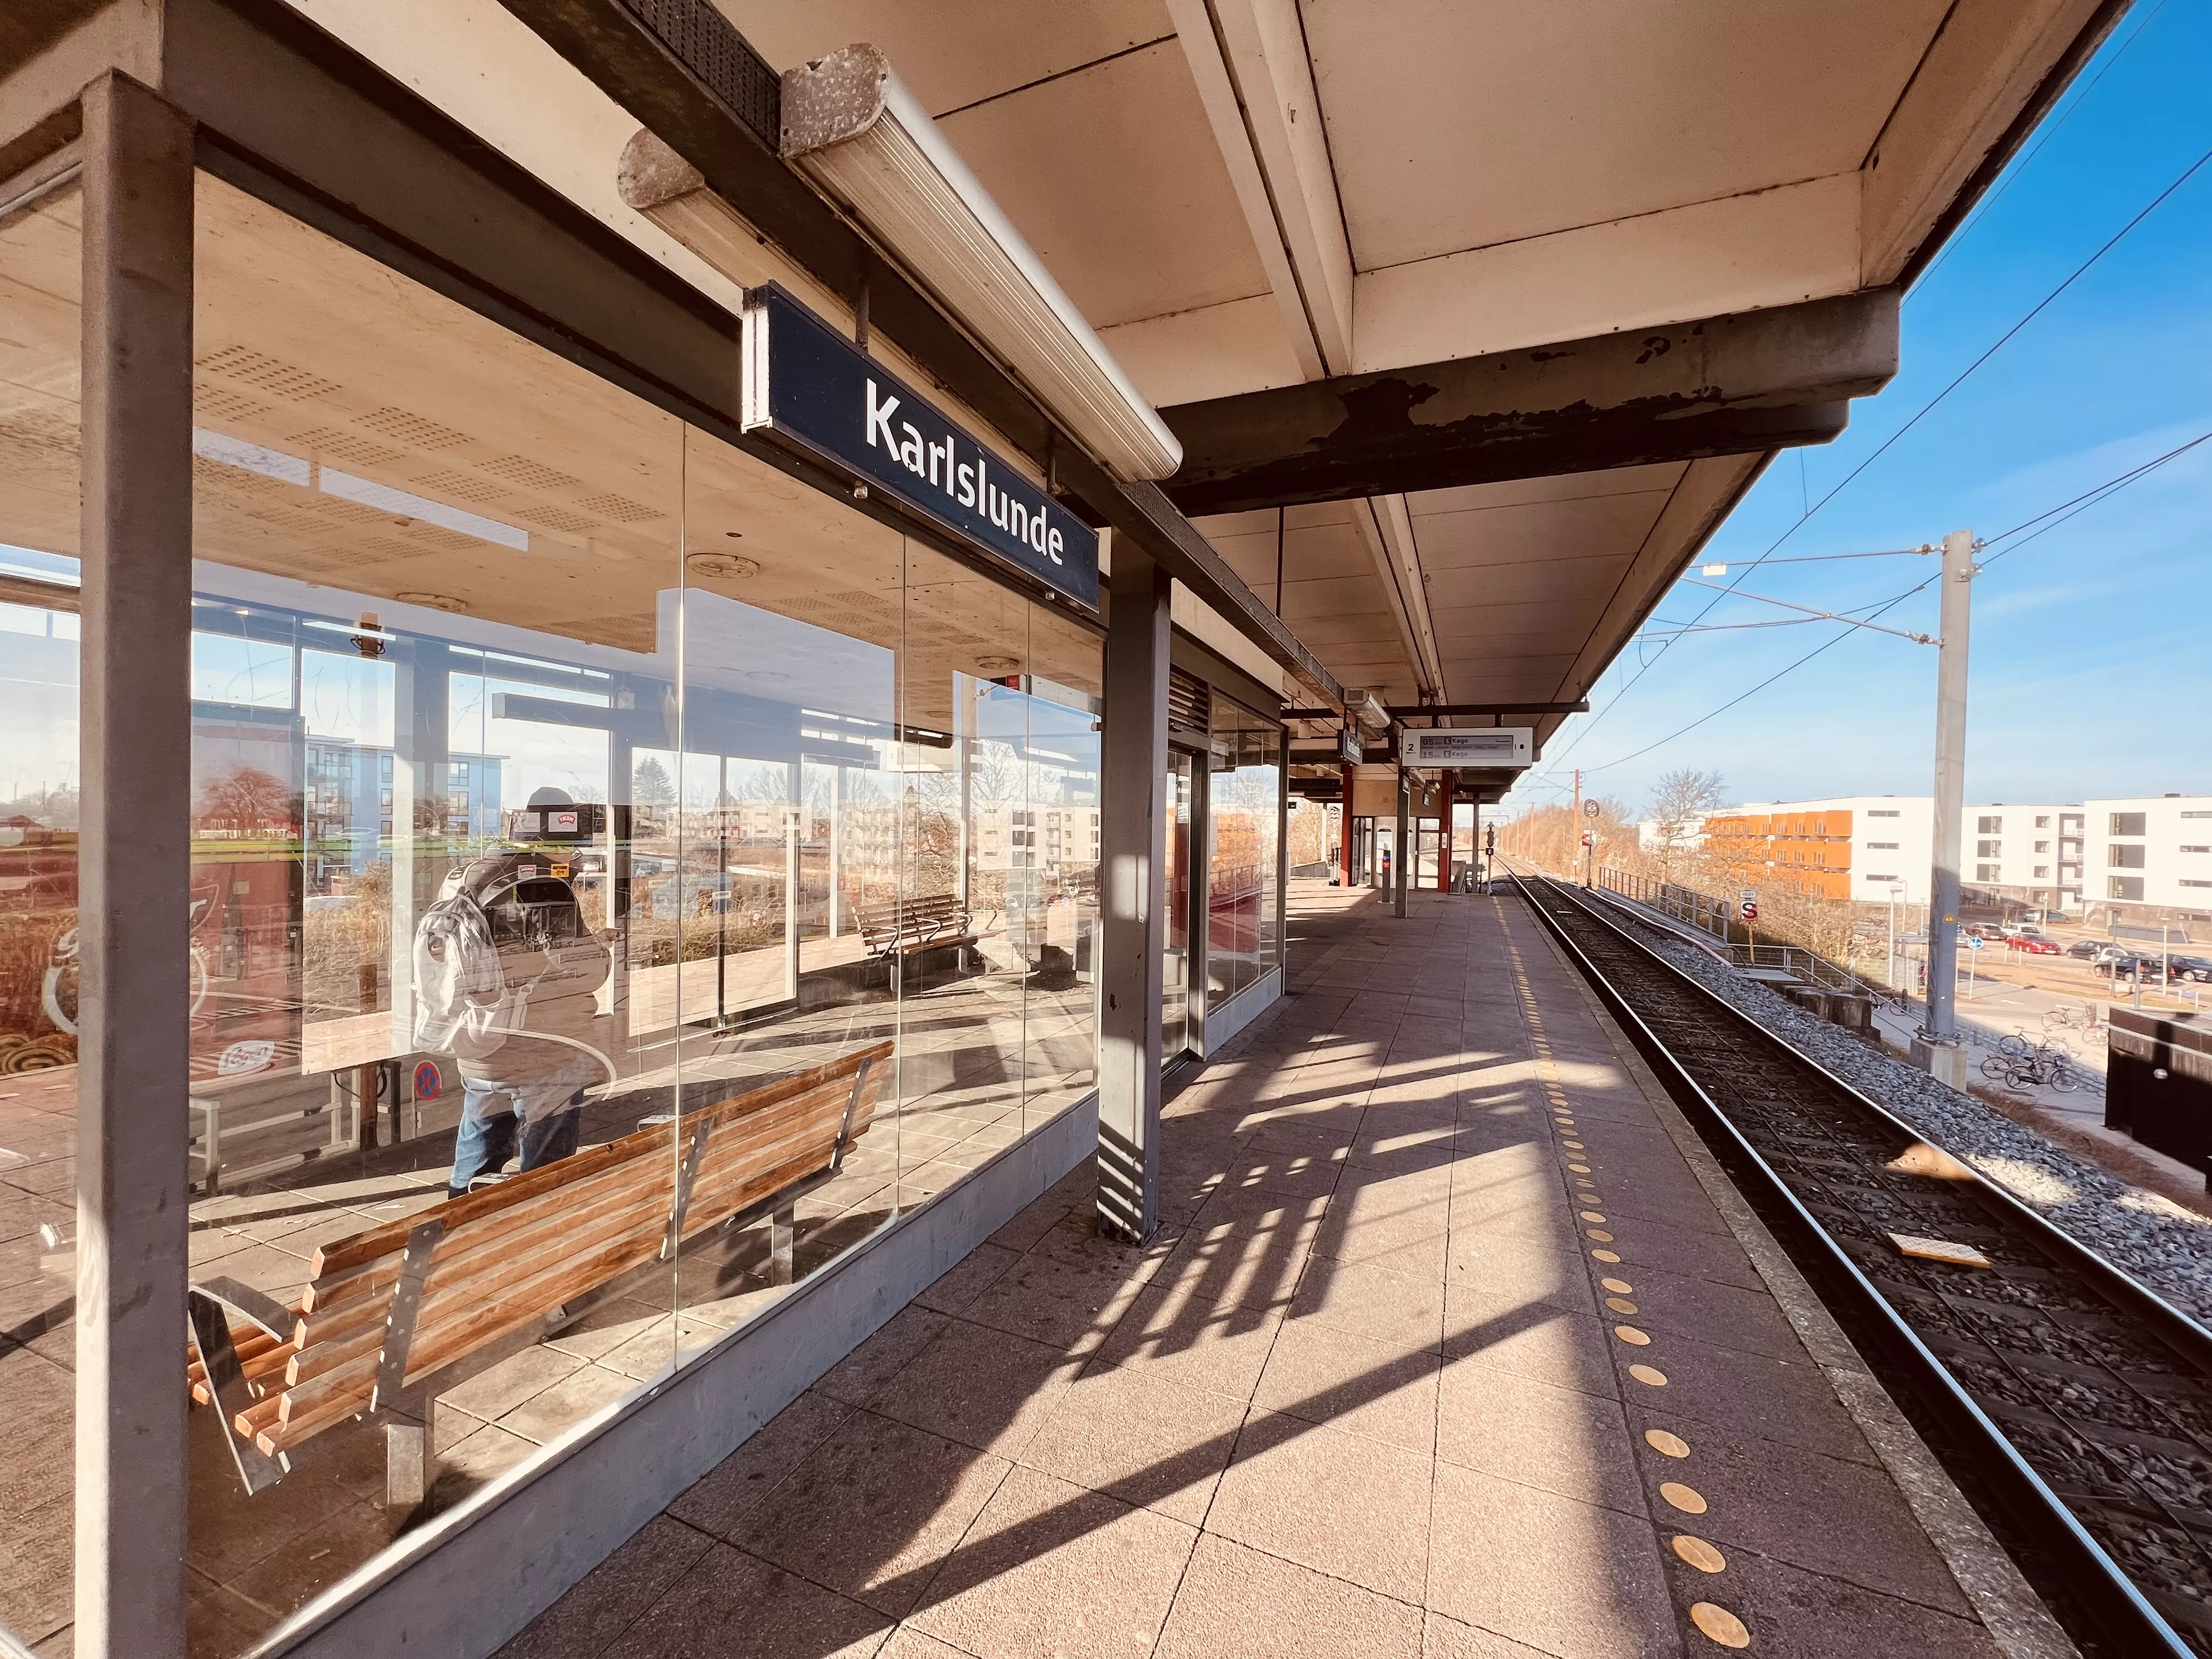 Billede af Karlslunde Station.